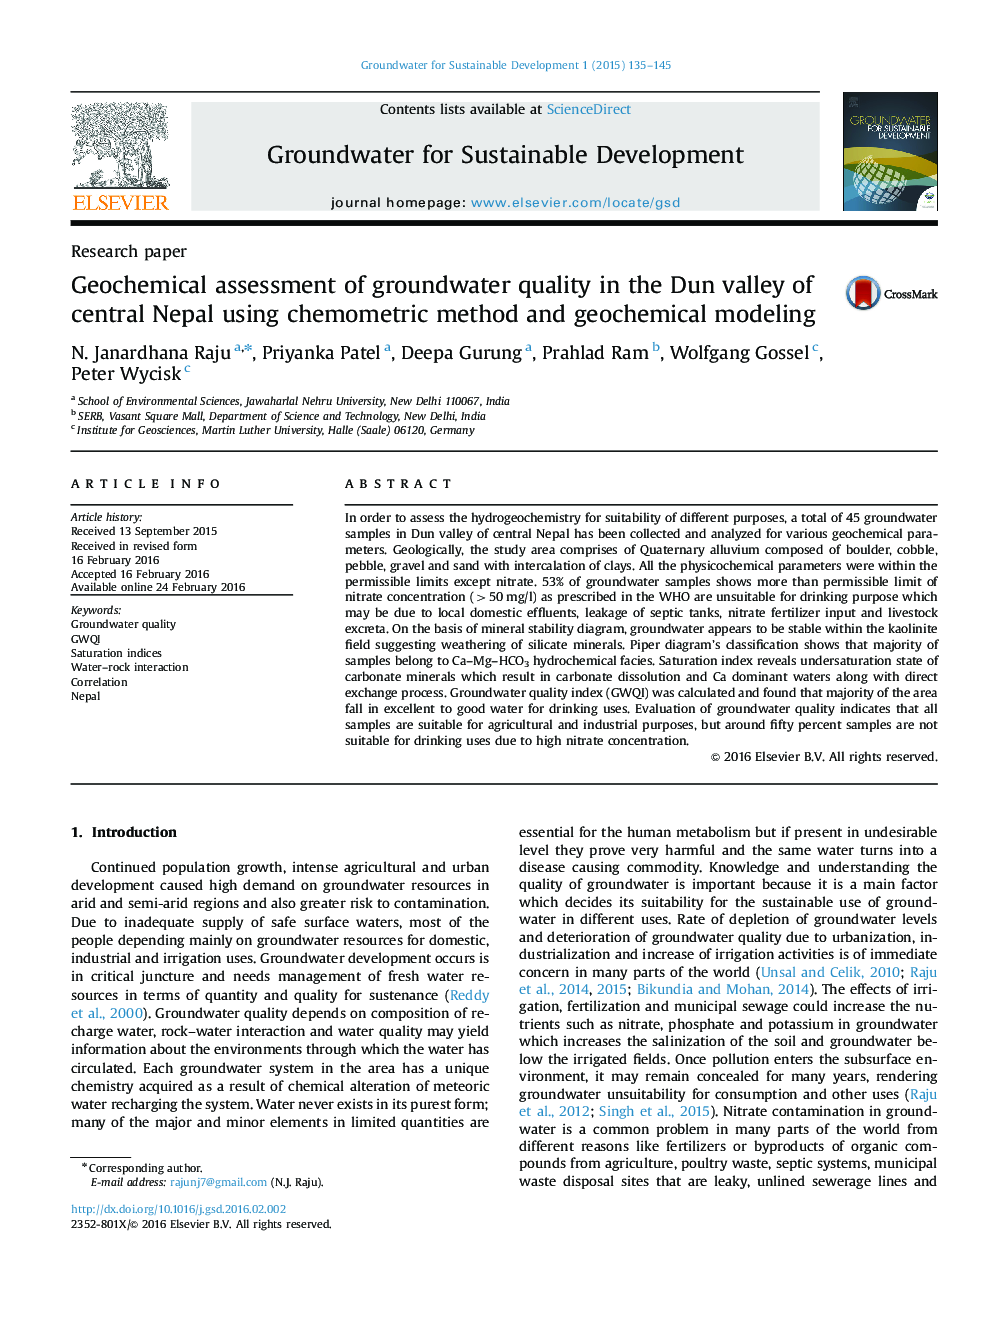 ارزیابی ژئوشیمیایی کیفیت آبهای زیرزمینی در دره دان از مرکز نپال با استفاده از روش شیمیایی و مدل سازی ژئوشیمیایی 